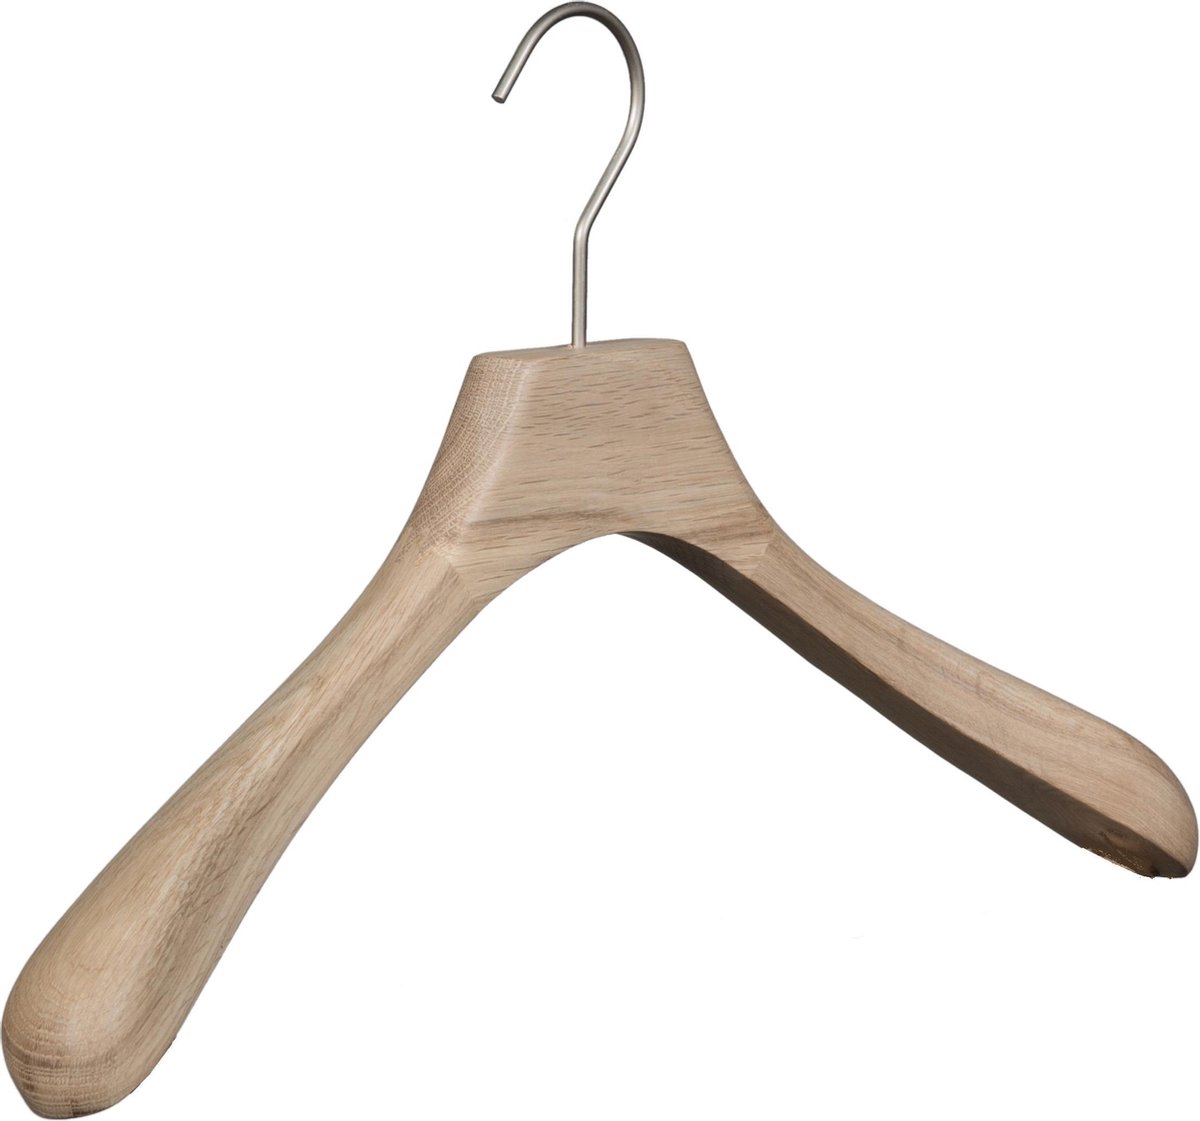 [Set van 5] Luxe handgemaakte kledinghangers / garderobehanger vervaardigd uit puur en ongelakt eikenhout met brede schouders en een 4mm dikke matzilveren haak